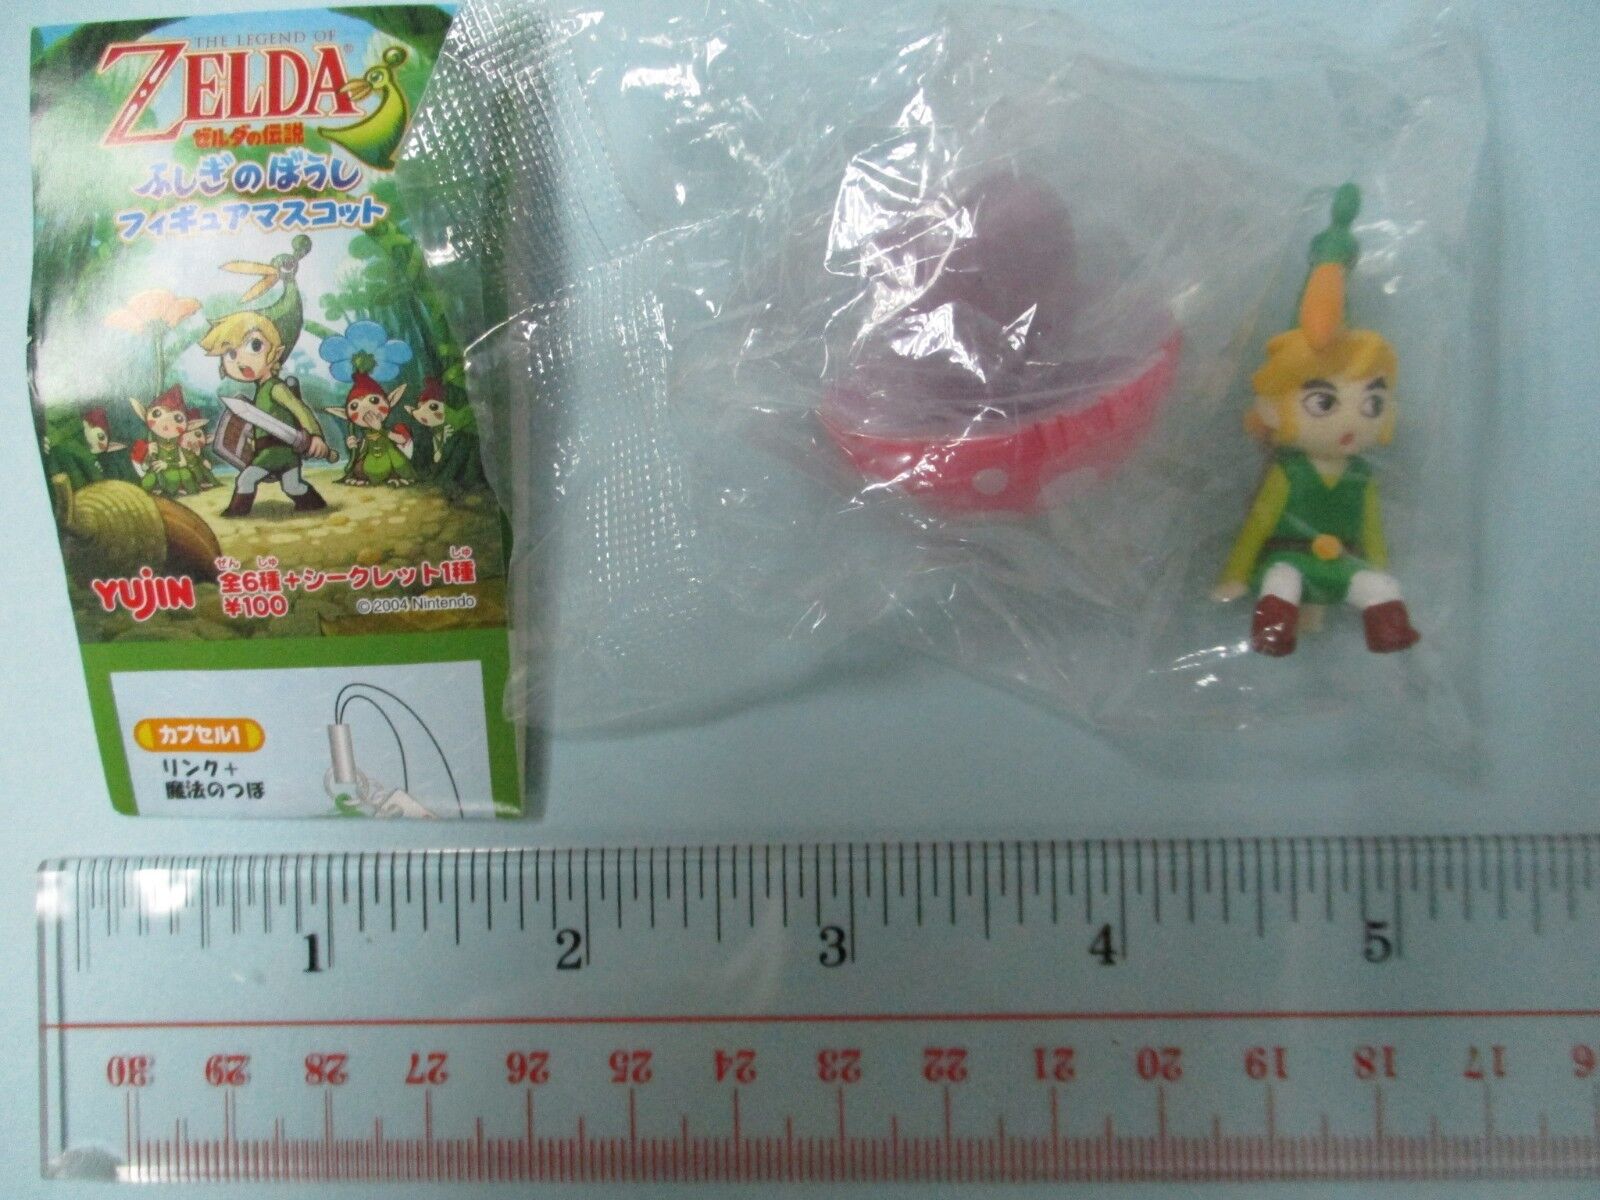 Yujin The Legend of Zelda Mobile Phone Strap figure nintendo game gashapon sp